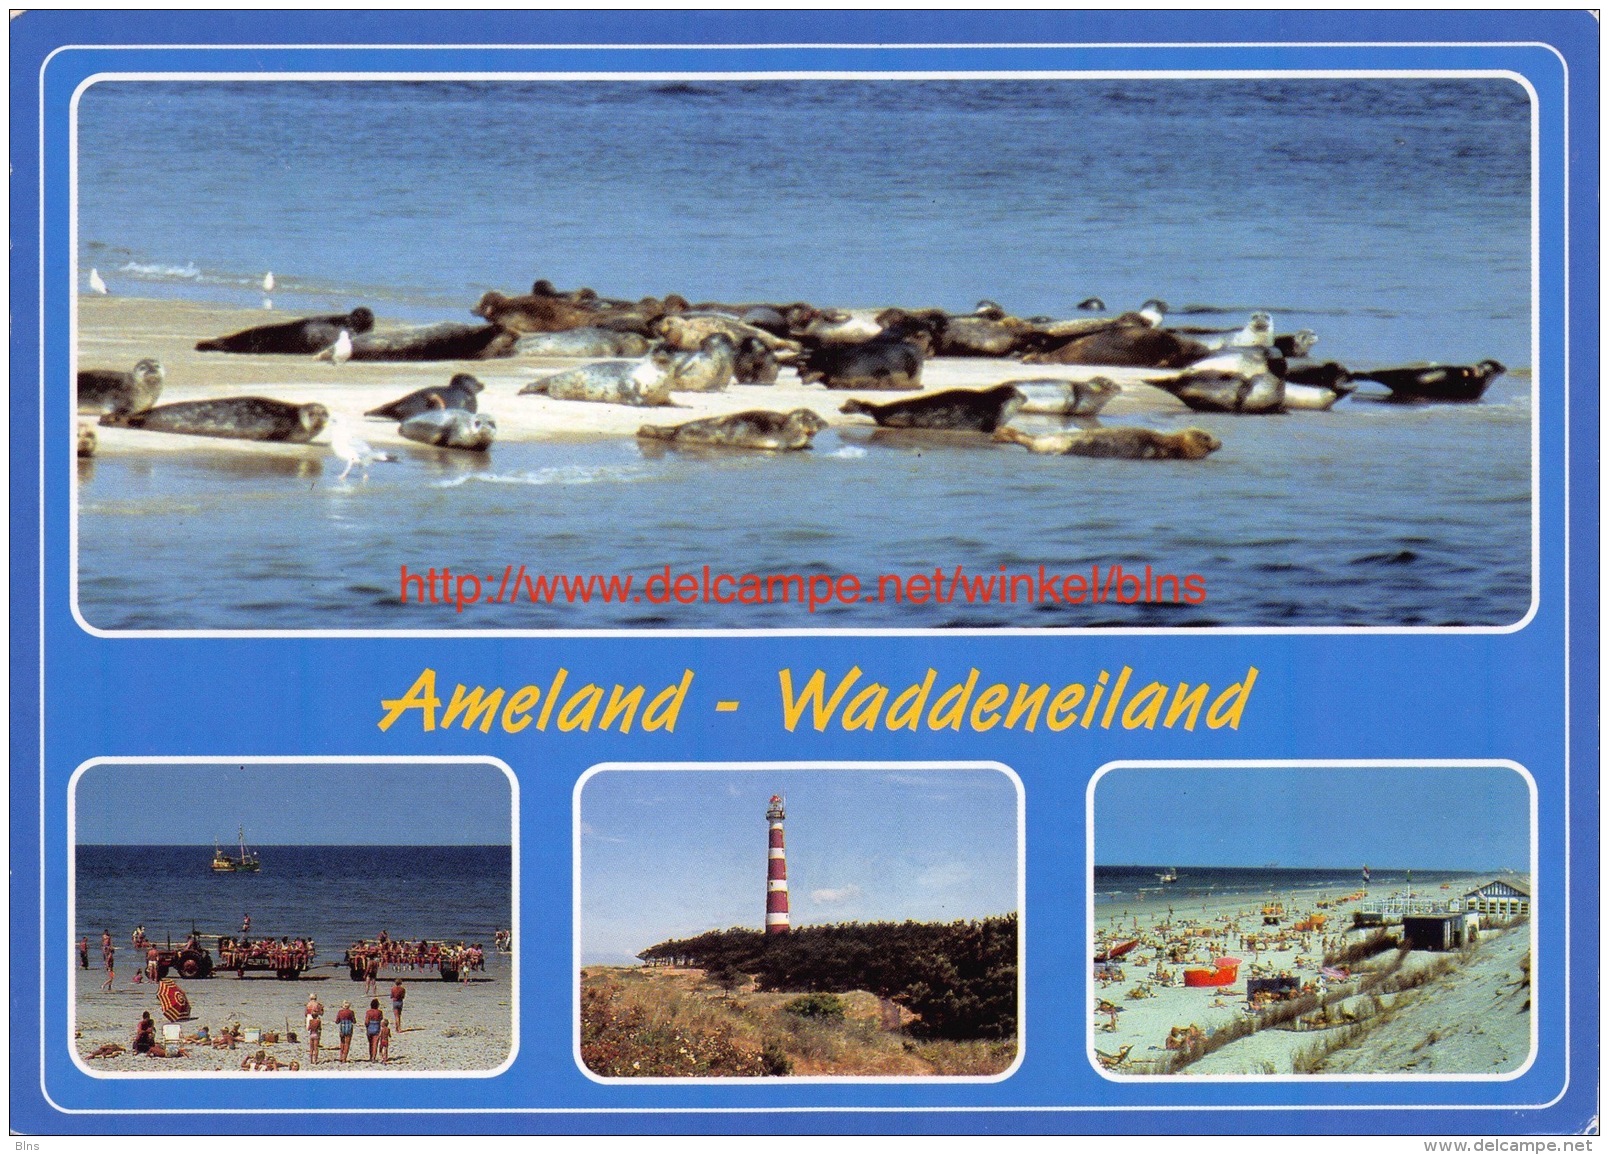 Ameland - Waddeneiland - Ameland